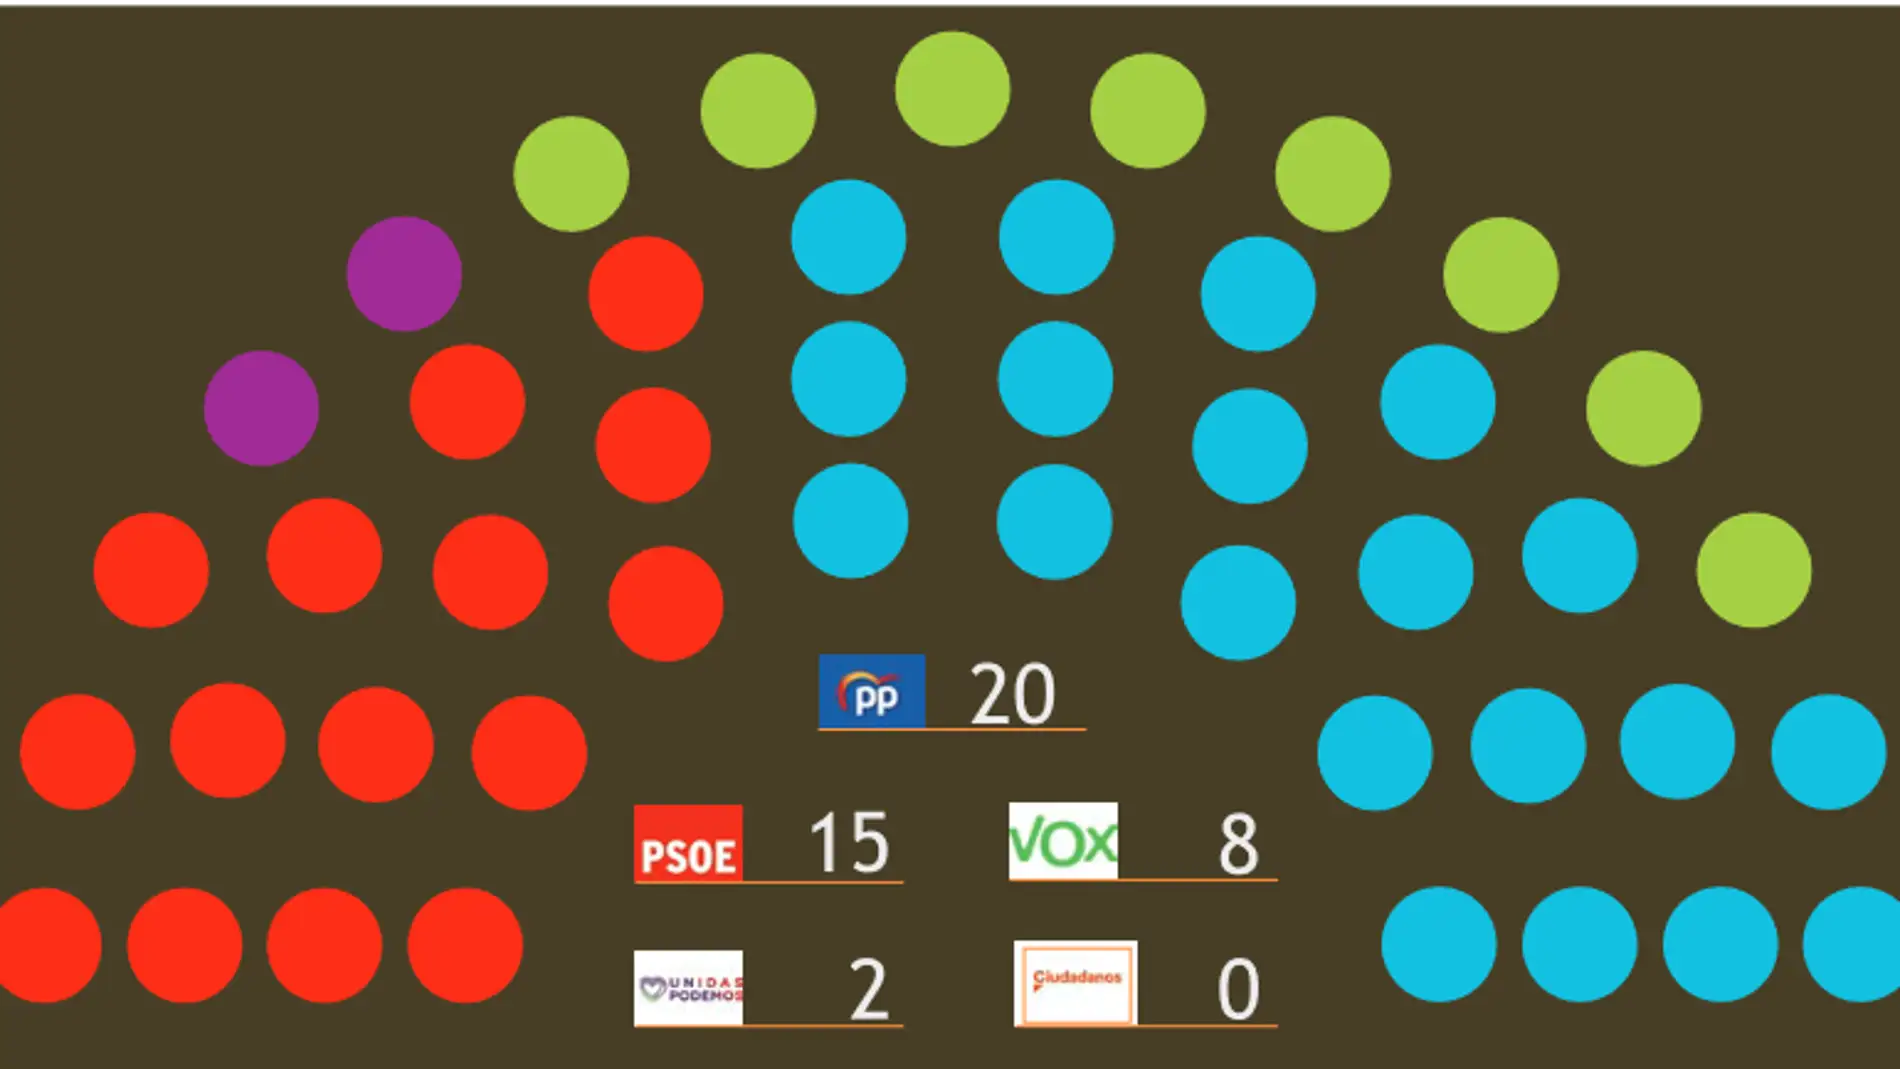 El PP estaría a solo tres escaños de la mayoría absoluta